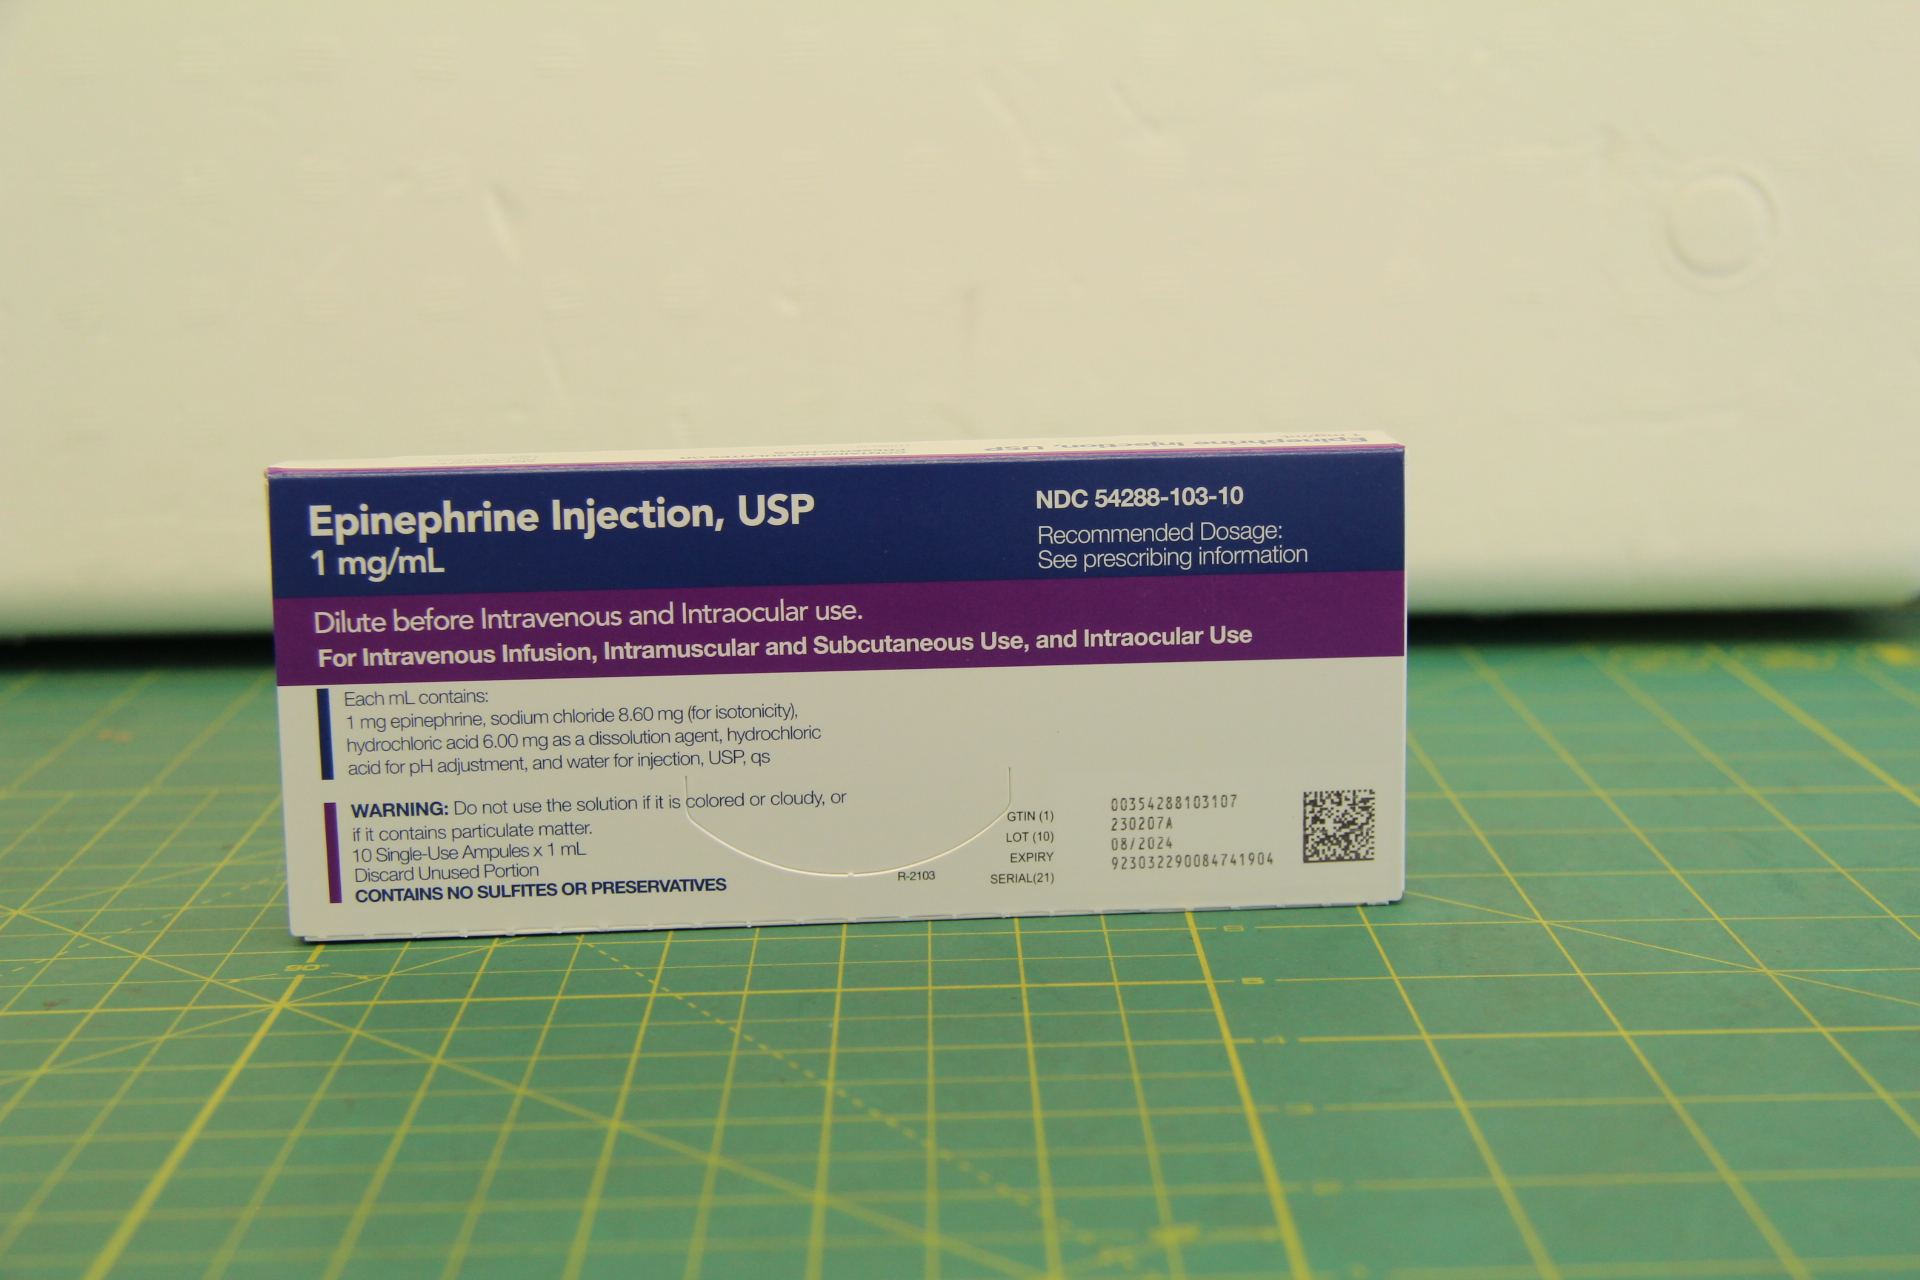 盐酸肾上腺素注射液/肾上腺素注射液Epinephrine Injection  商品名：EPINEPHRINE